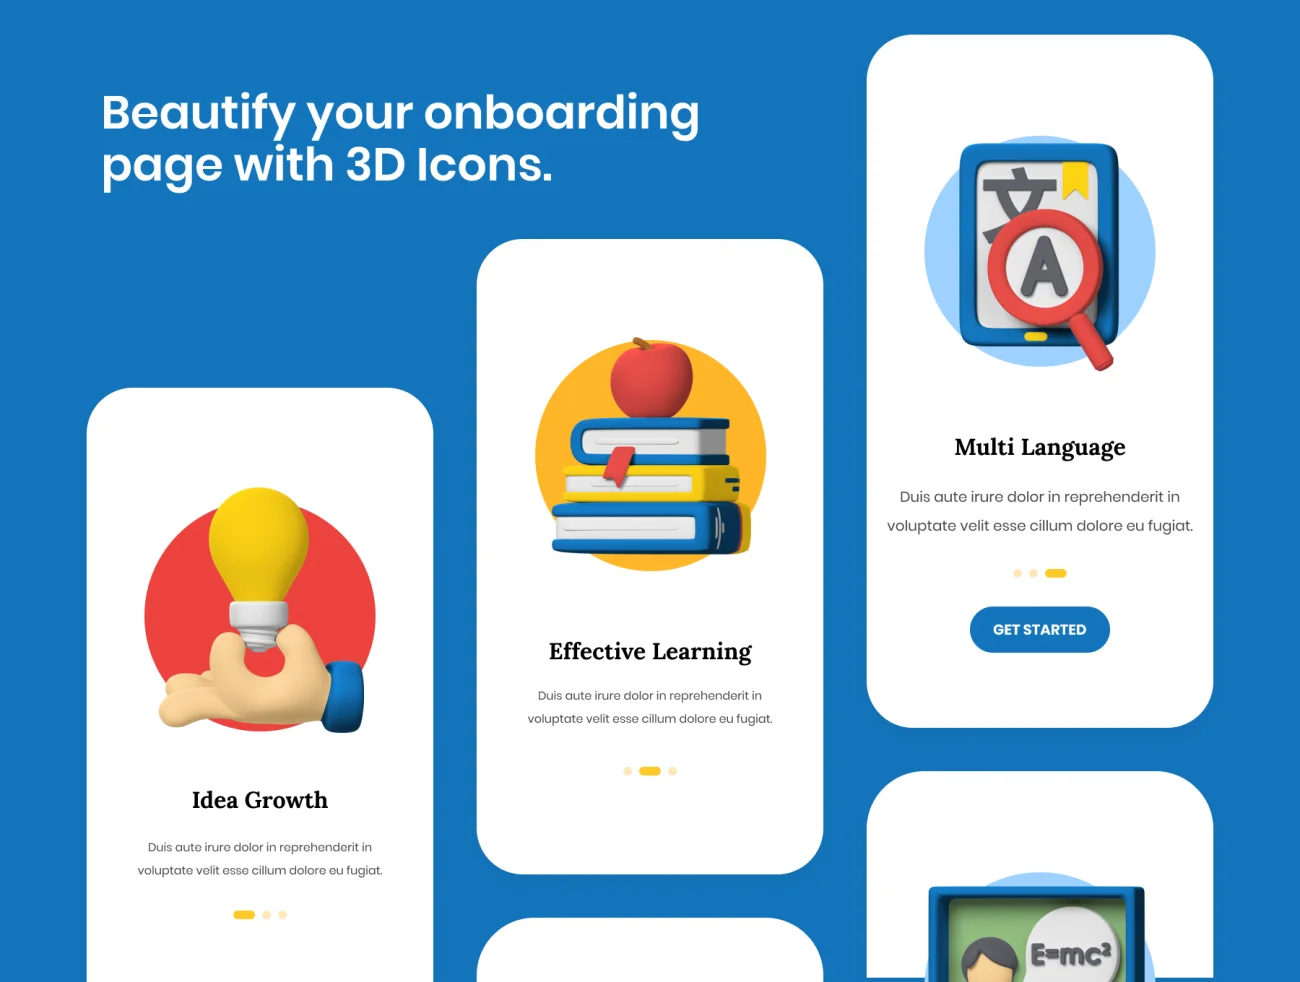 20款高质量在线教育3D图标合集 3D Education Icons插图9